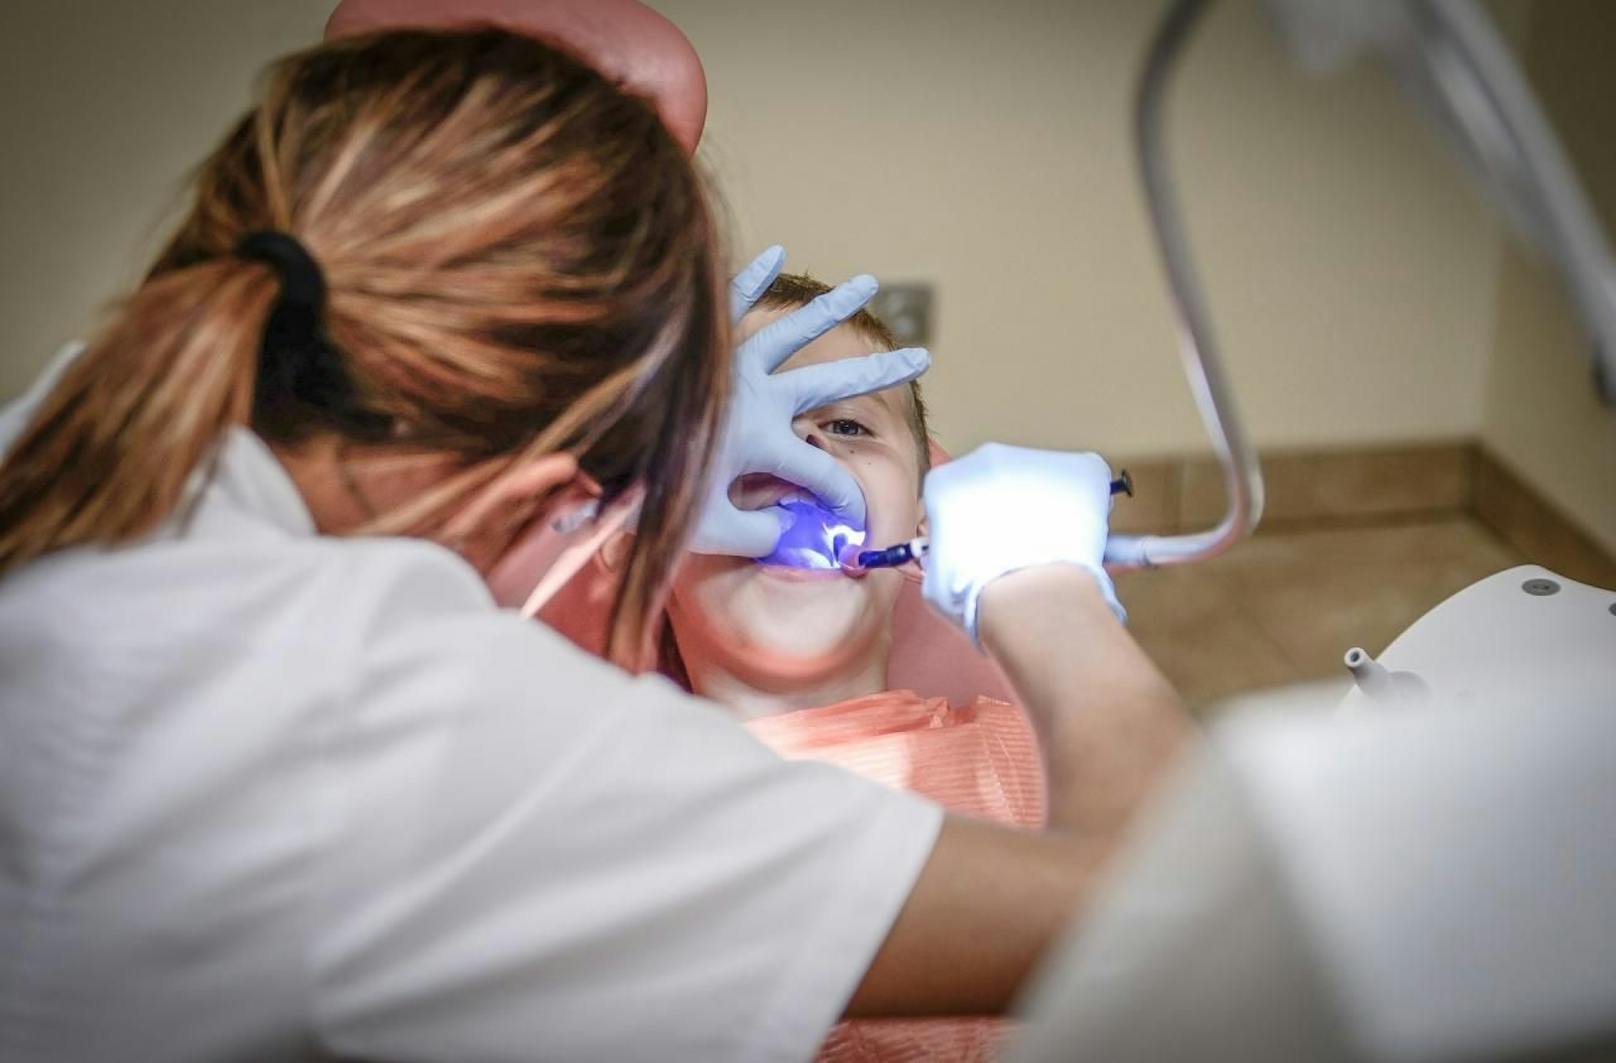 Die Behandlung beim Zahnarzt ängstigt viele Menschen: Angenehme Musik kann ebenso helfen wie eine lokale Betäubung.